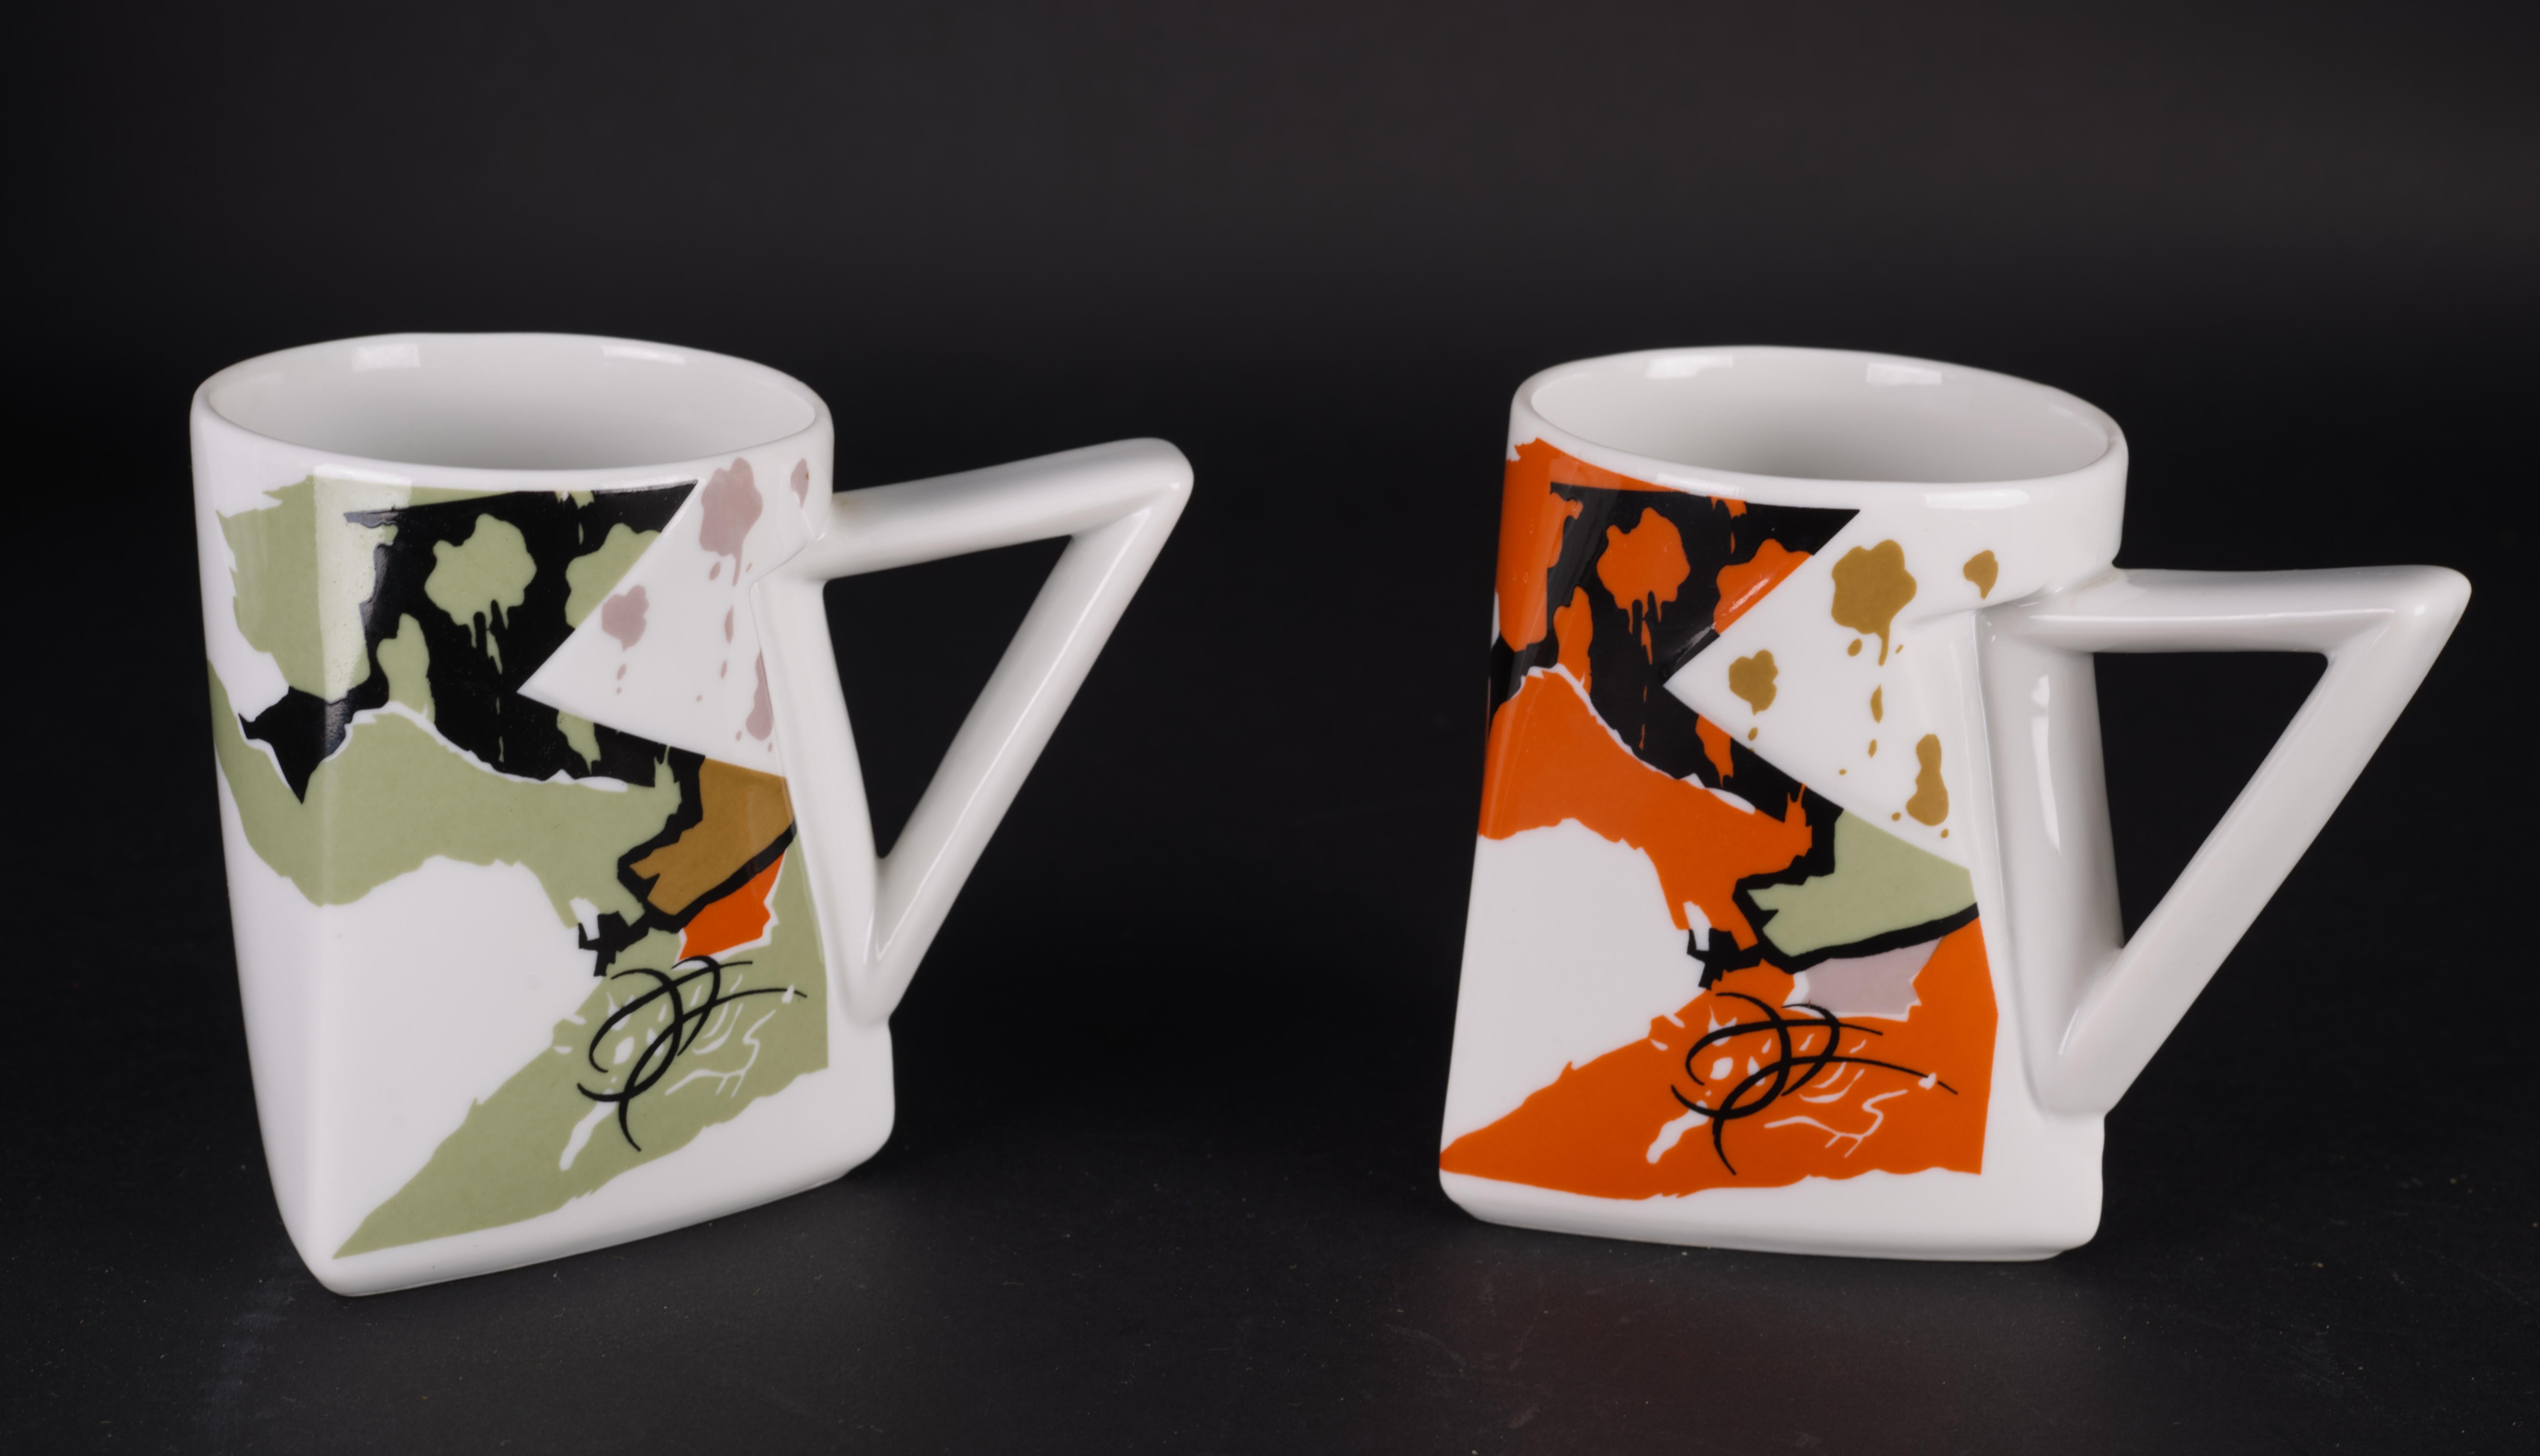 
Cette paire de mugs au motif crépusculaire a été conçue par Kaneaki Fujimori pour Kato Kogei Japan dans les années 1980. Les mugs sont décorés de motifs colorés en noir, en olive et en orange, clairement influencés par le style Memphis Milano. Les